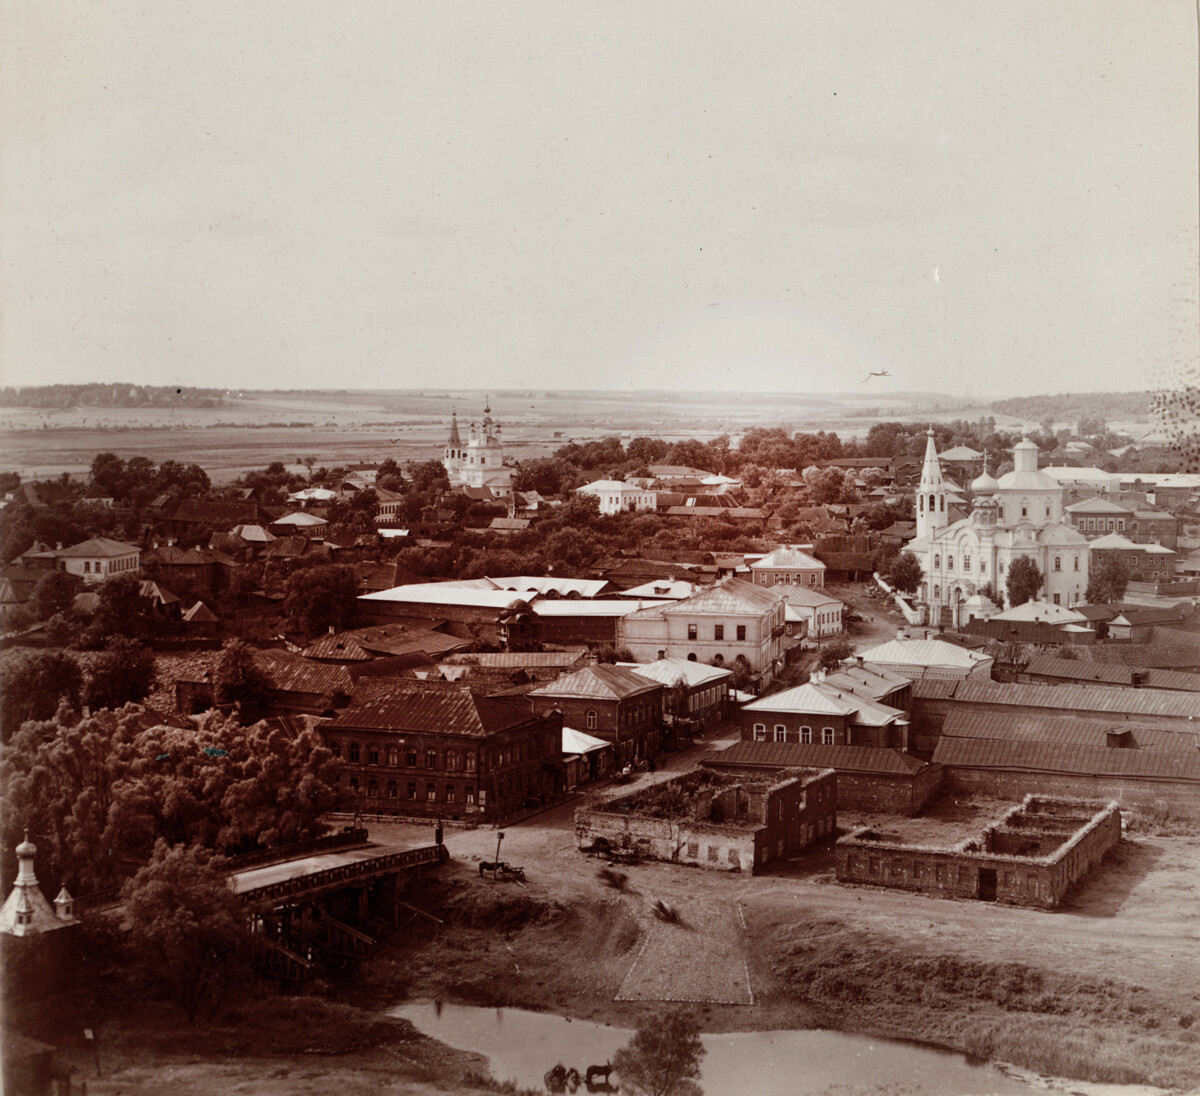 Vue sur Viazma depuis le clocher de la cathédrale de la Trinité, en direction du domaine de Khmelita. Les églises de l’Annonciation (à gauche) et de l’Entrée-de-Christ-à-Jérusalem (à droite) ont été démolies sous l’ère soviétique. Photo prise à l’été 1912